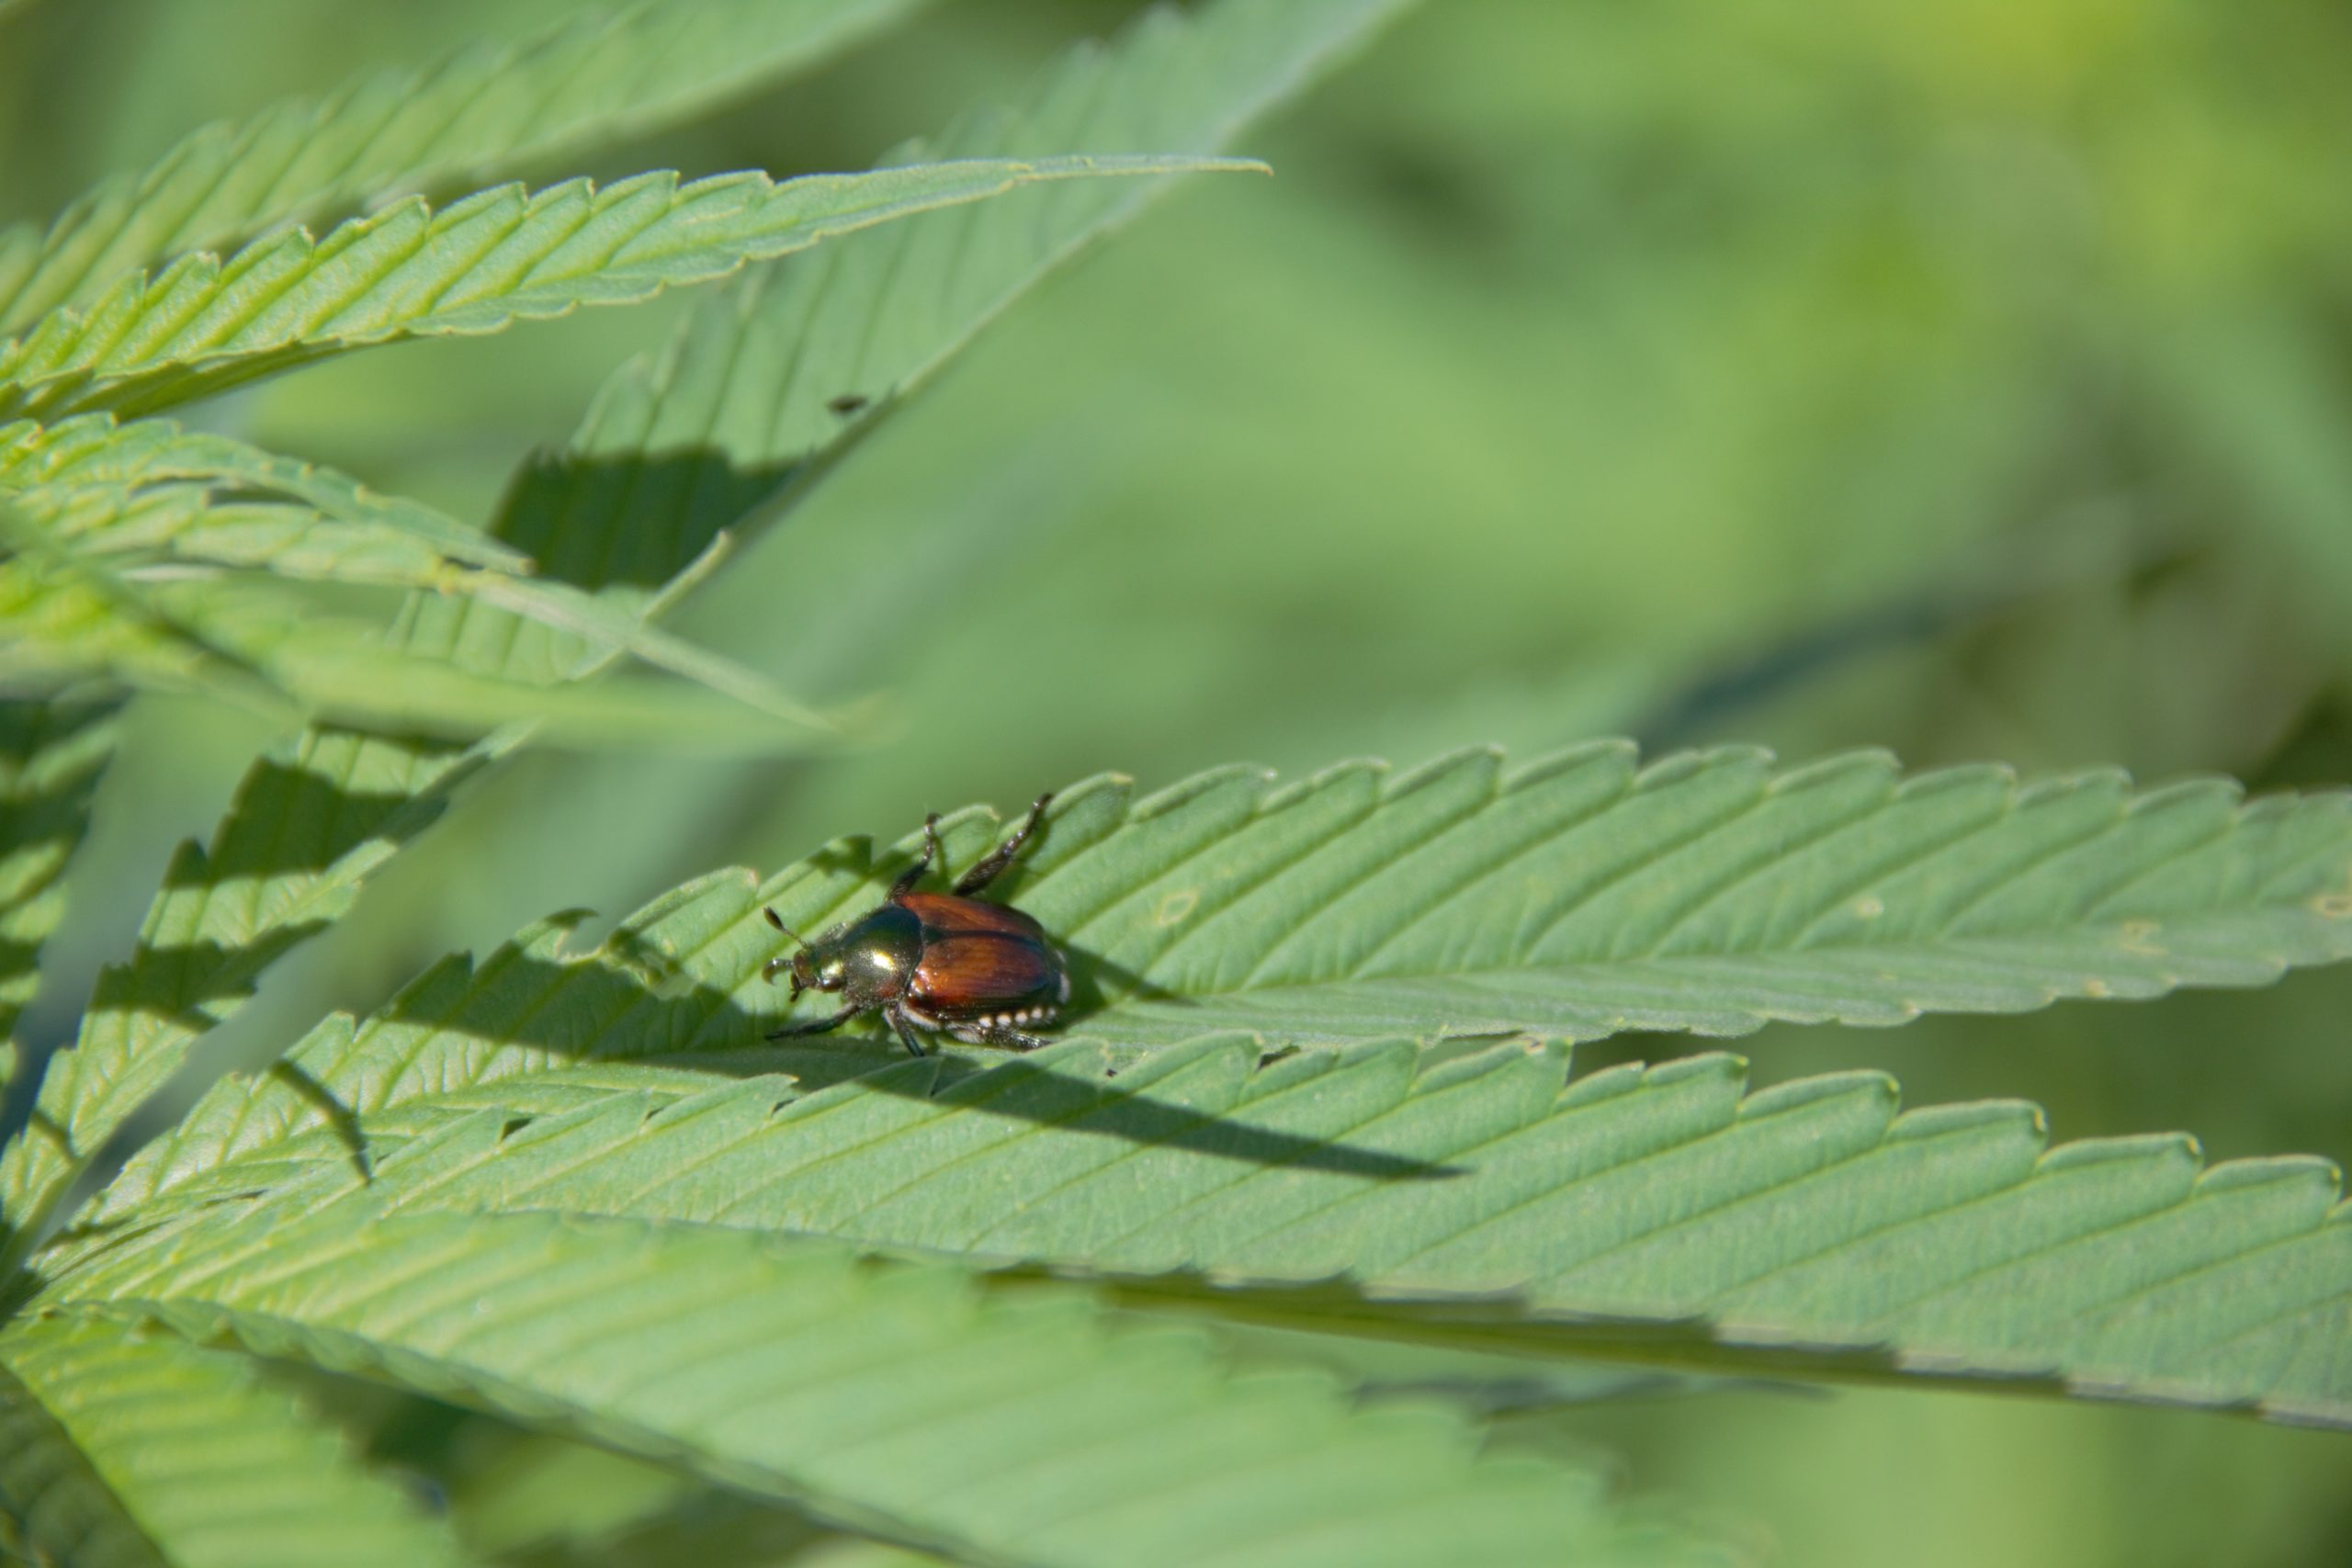 Image of a Japanese beetle on hemp leaves